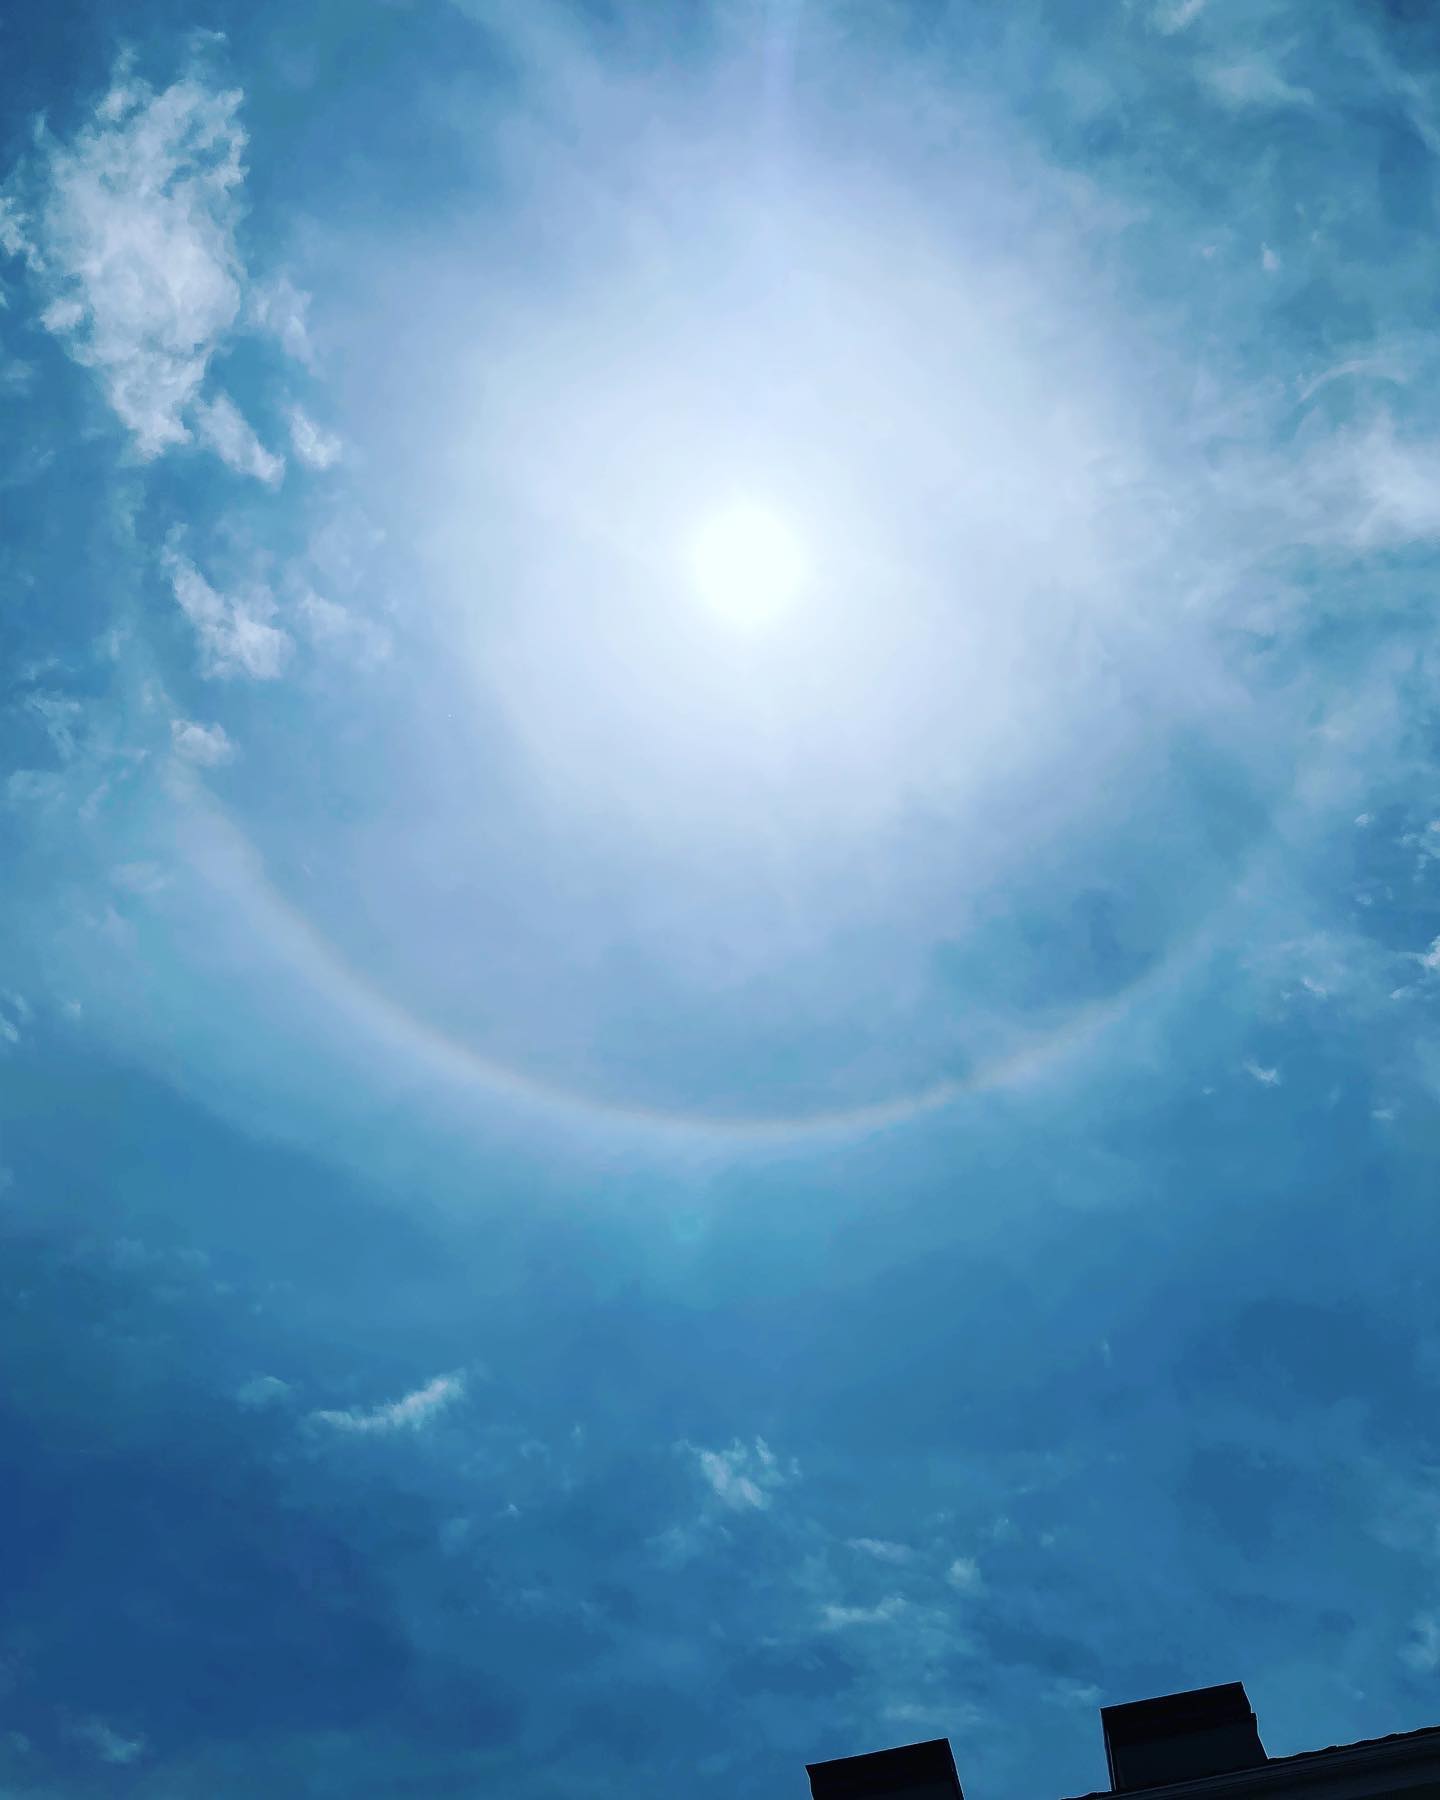 #ハロ現象！ハロは、雲の中にある氷の粒に太陽の光が屈折してできる現象。うす〜い雲が太陽にかかった時に見えます。ハロが見られる時は天気下り坂のサインといわれています。#神奈川県#横浜市#旭区#二俣川#相鉄線沿いカイロ#カイロプラクティック#骨盤矯正#頸椎矯正#胸椎矯正#中国氣功#姿勢改善#股関節痛改善#筋膜はがし#O脚改善